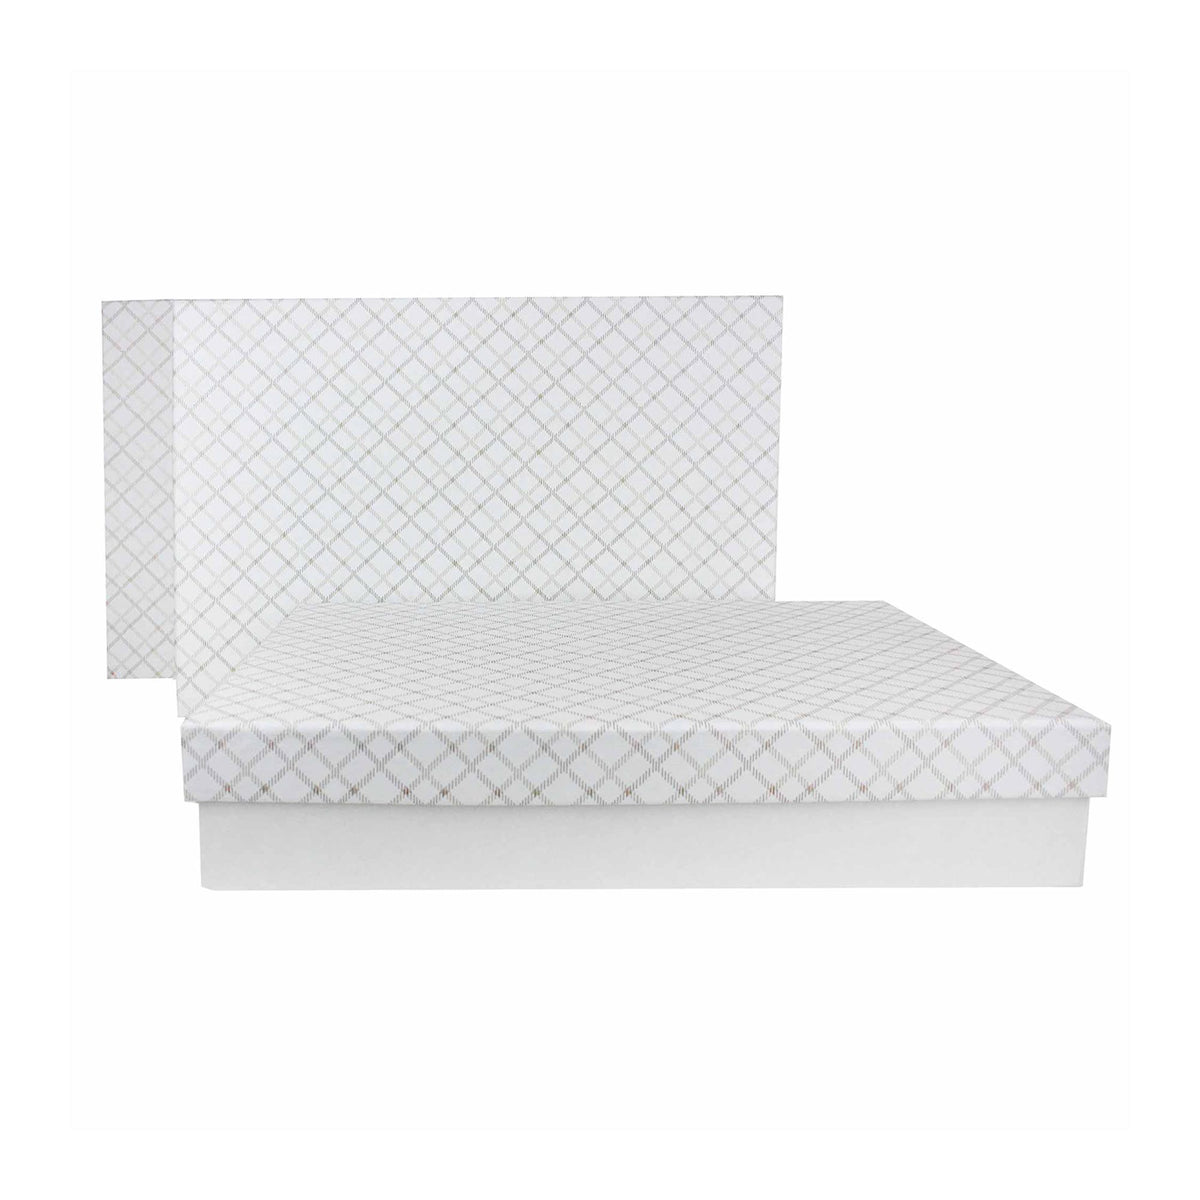 Chequered White Gift Box - Set of 3